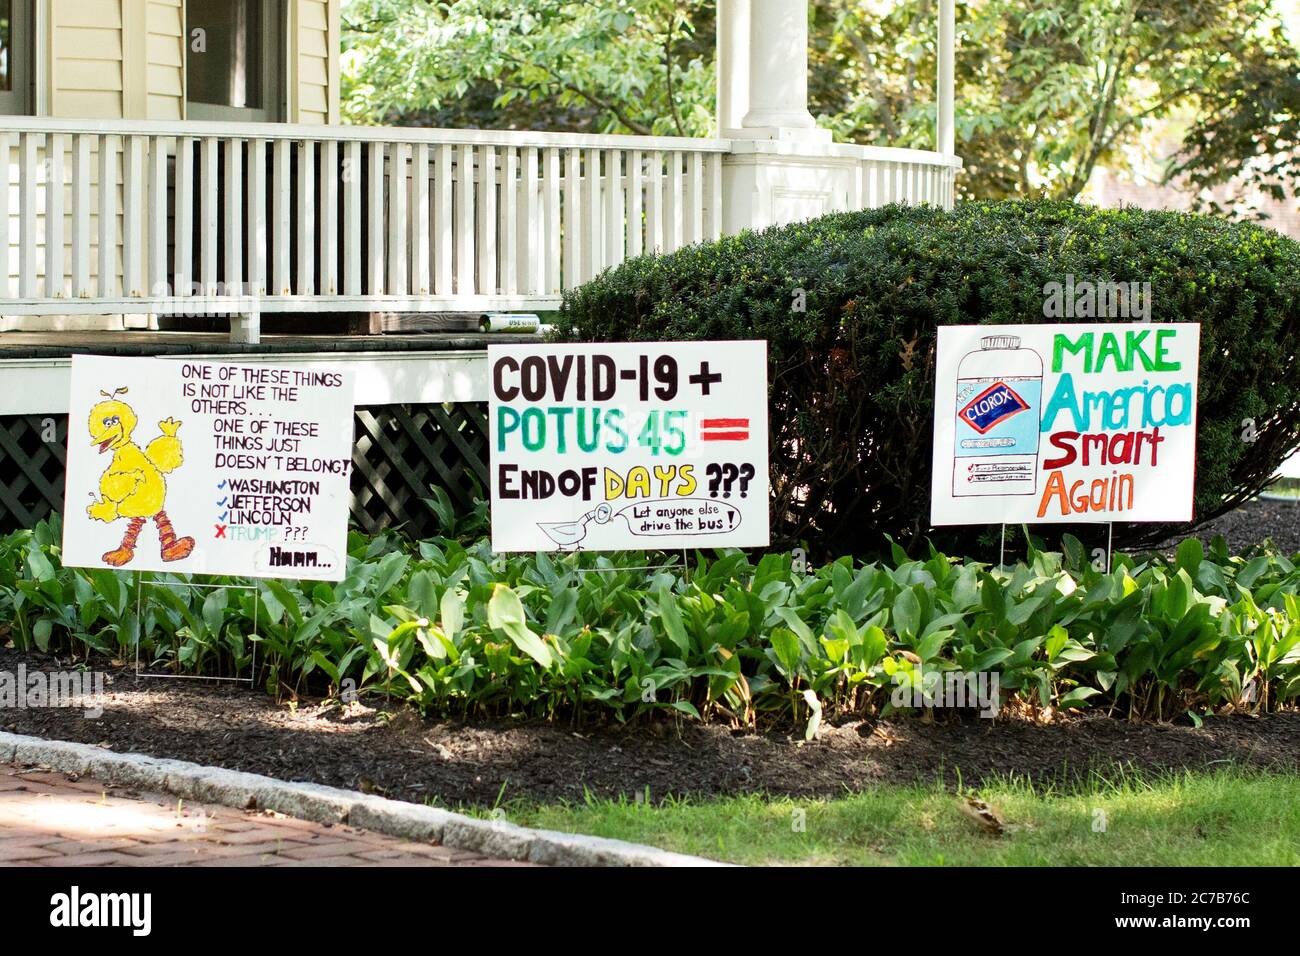 Des signes de protestation anti-Trump pendant la pandémie du coronavirus devant une maison sur Washington Street à Wellesley, Massachusetts, États-Unis. Banque D'Images